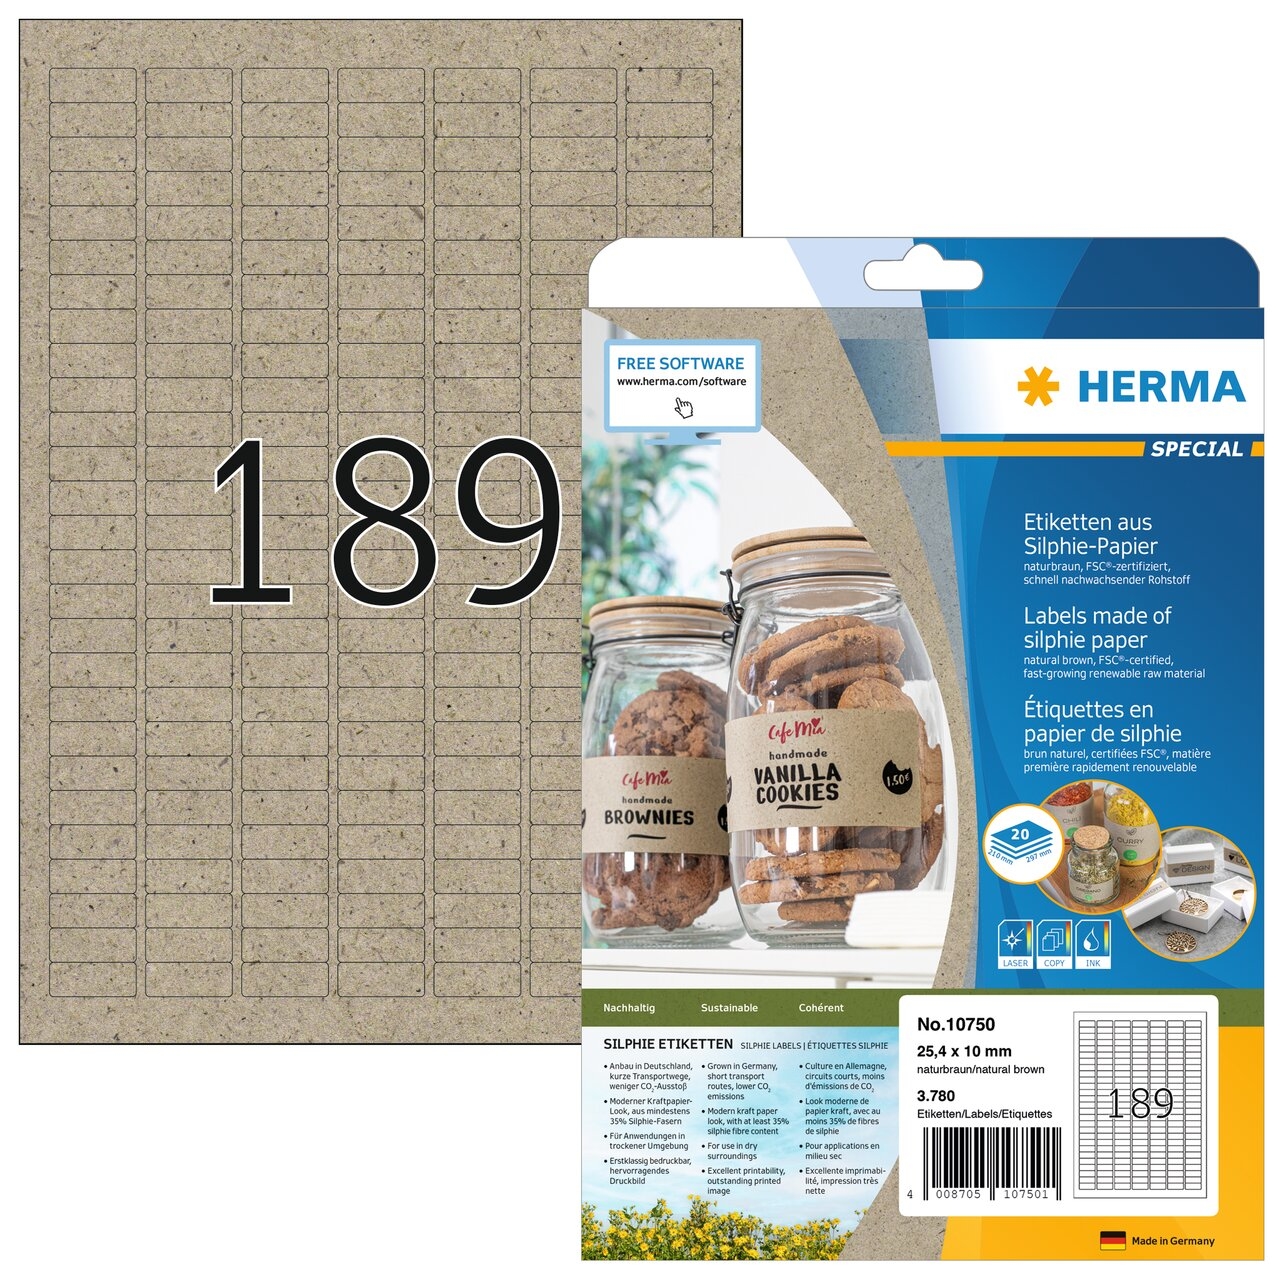 HERMA Étiquettes 25,4 x 10 mm 10750 en papier silphie 3780 pièces